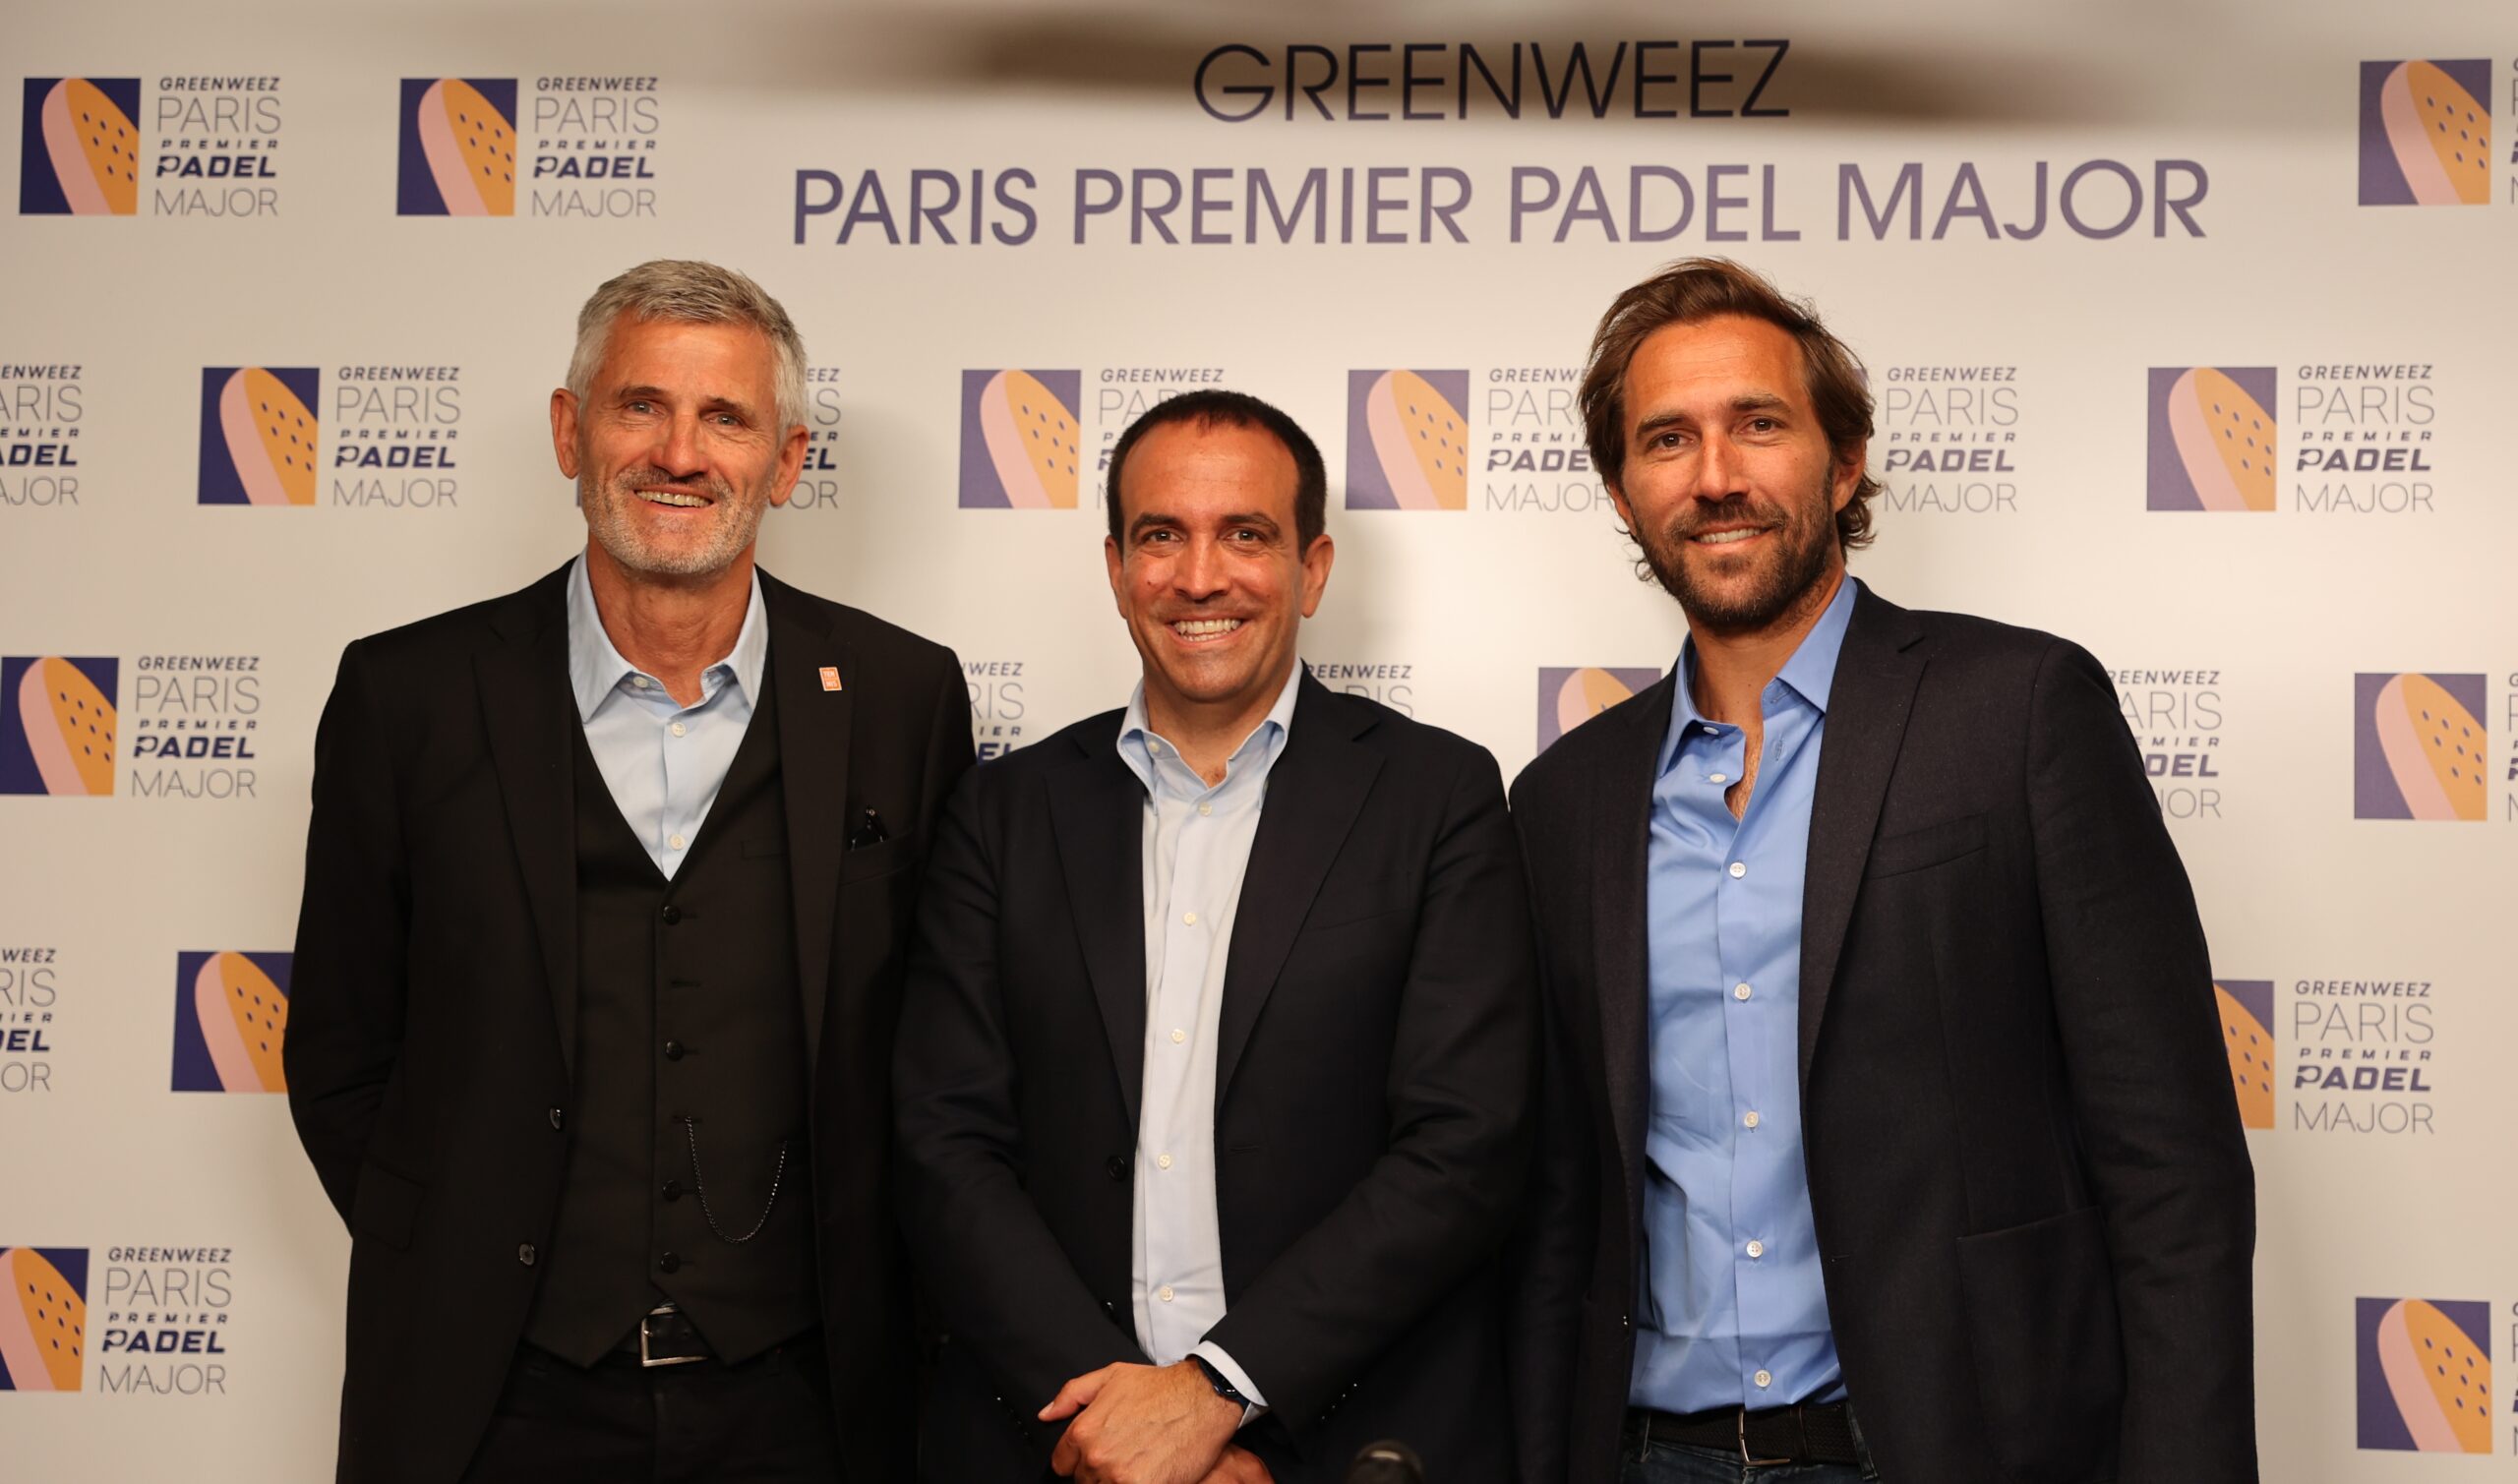 Roland-Garros stadion klar til at byde velkommen Greenweez Paris Premier Padel Major